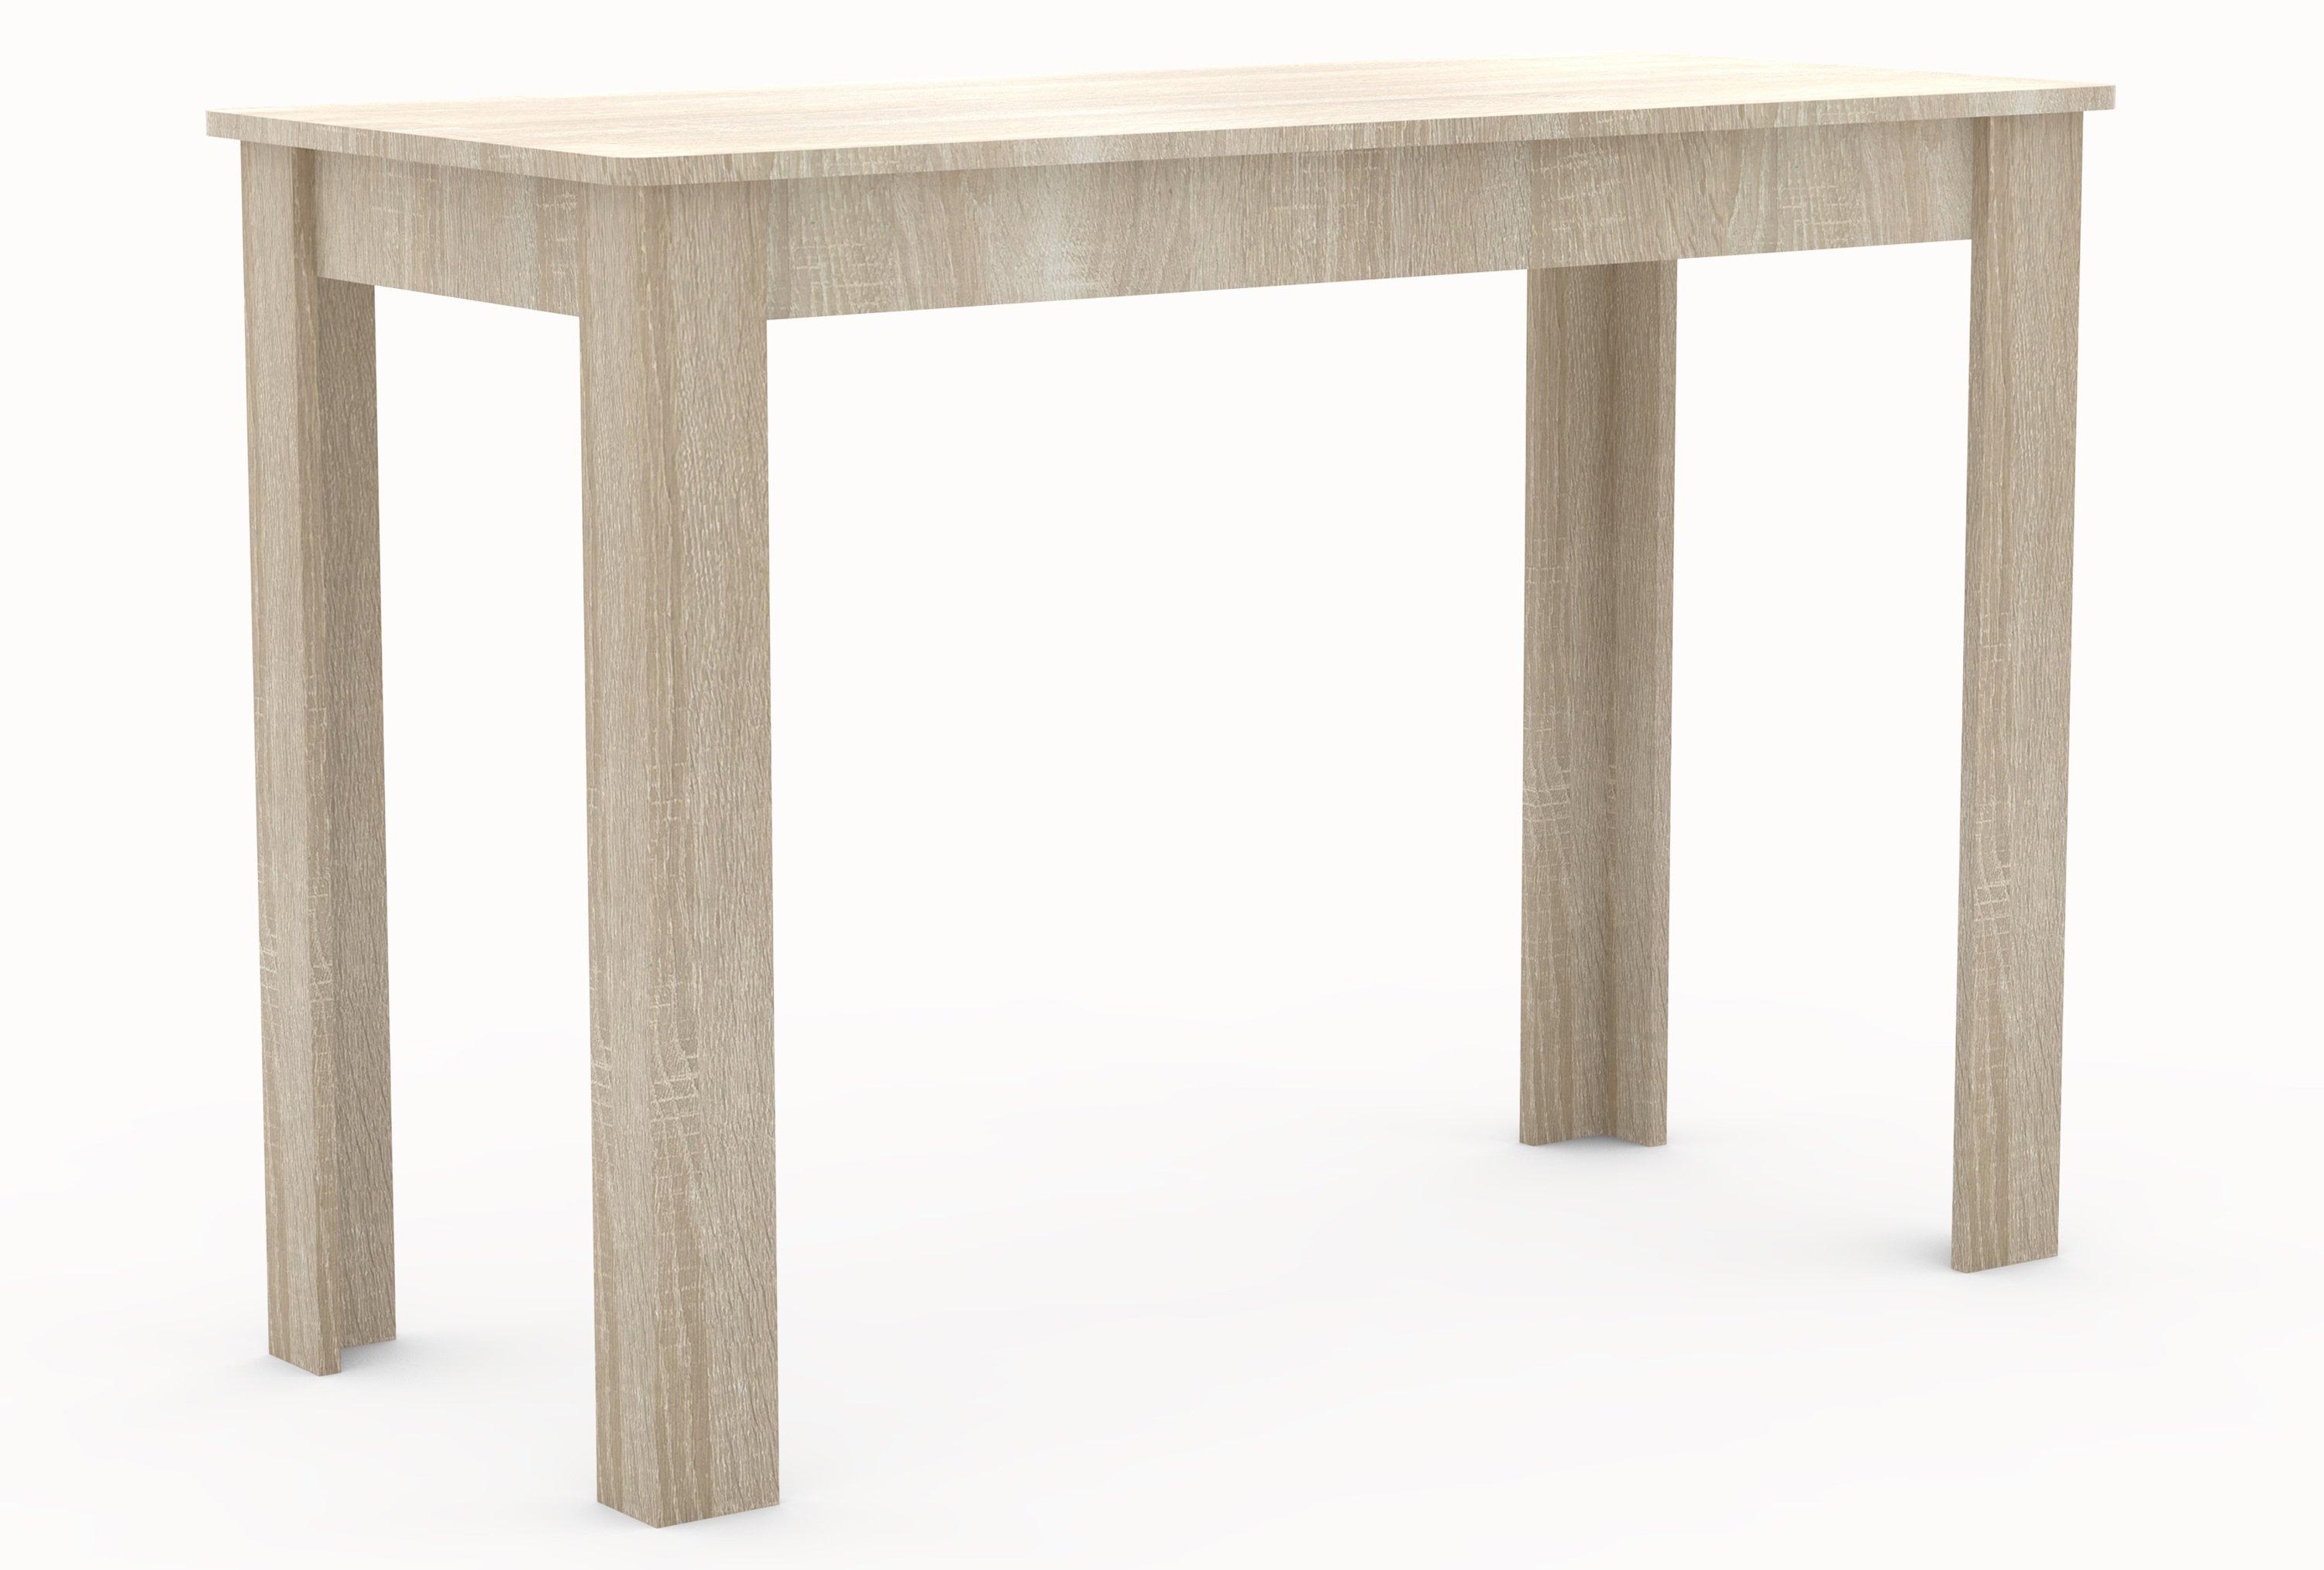 VCM Table à manger en bois Table de cuisine Esal 110 x 50 cm Table à manger en bois Table de cuisine Esal 110 x 50 cm  